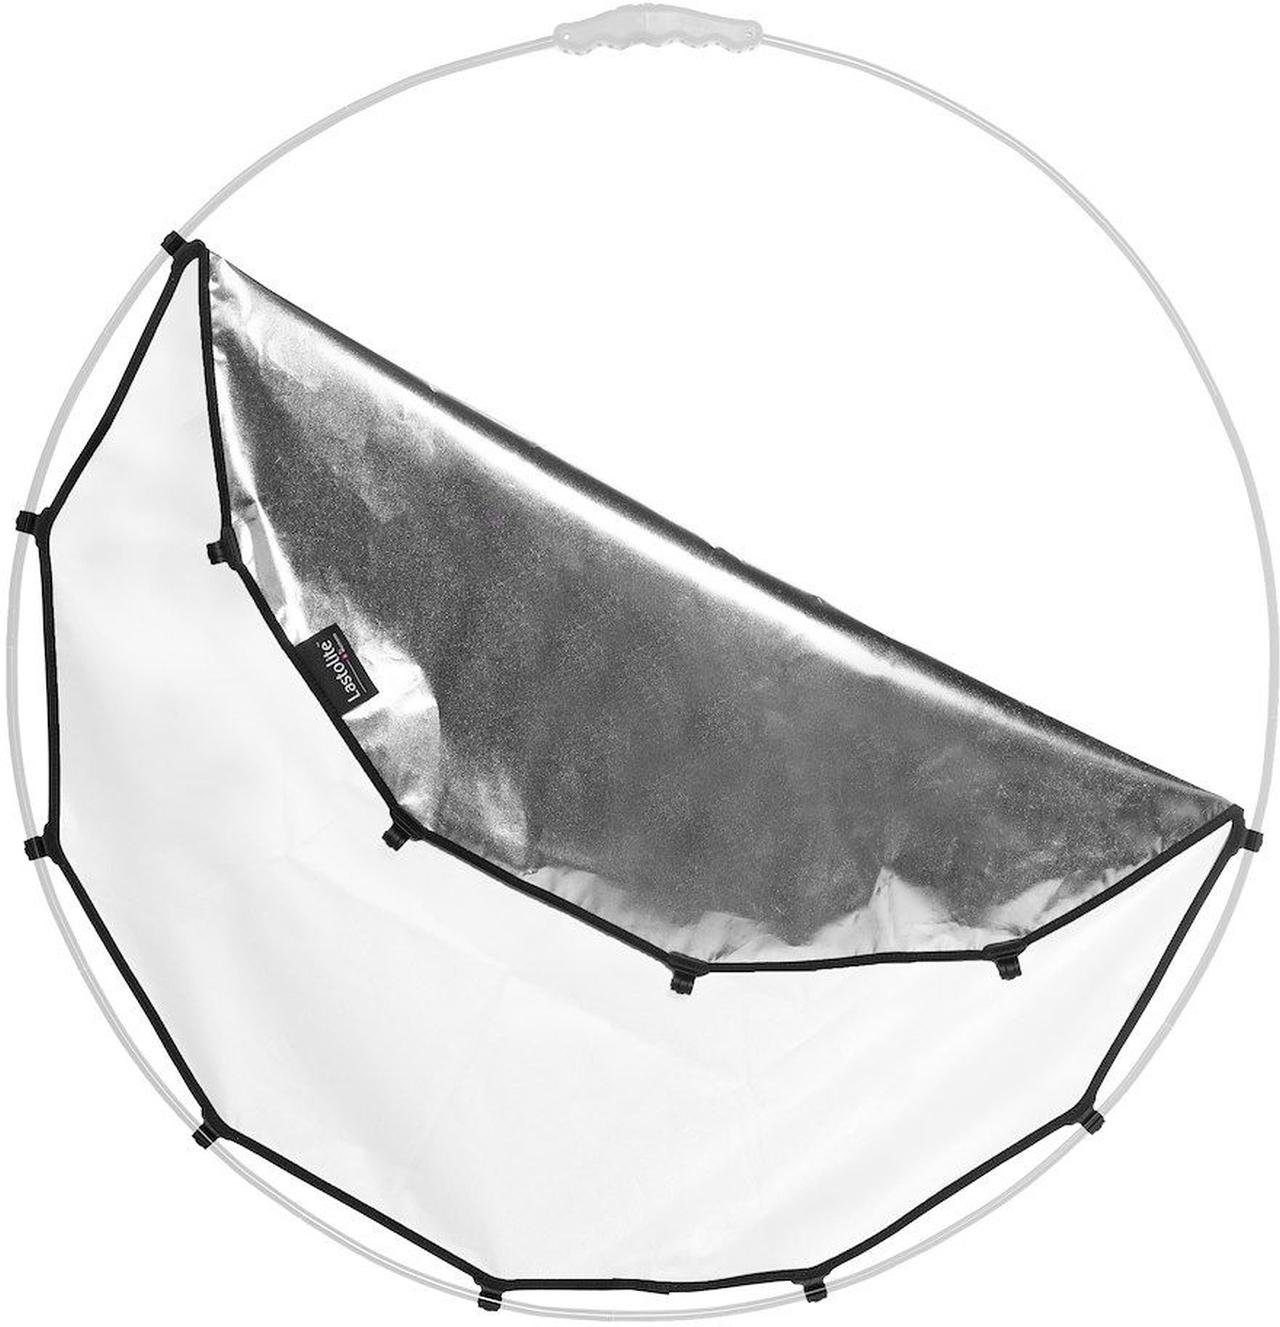 Lastolite LR3302 HaloCompact Cover Objektivzubehör Silber/Weiss 82cm